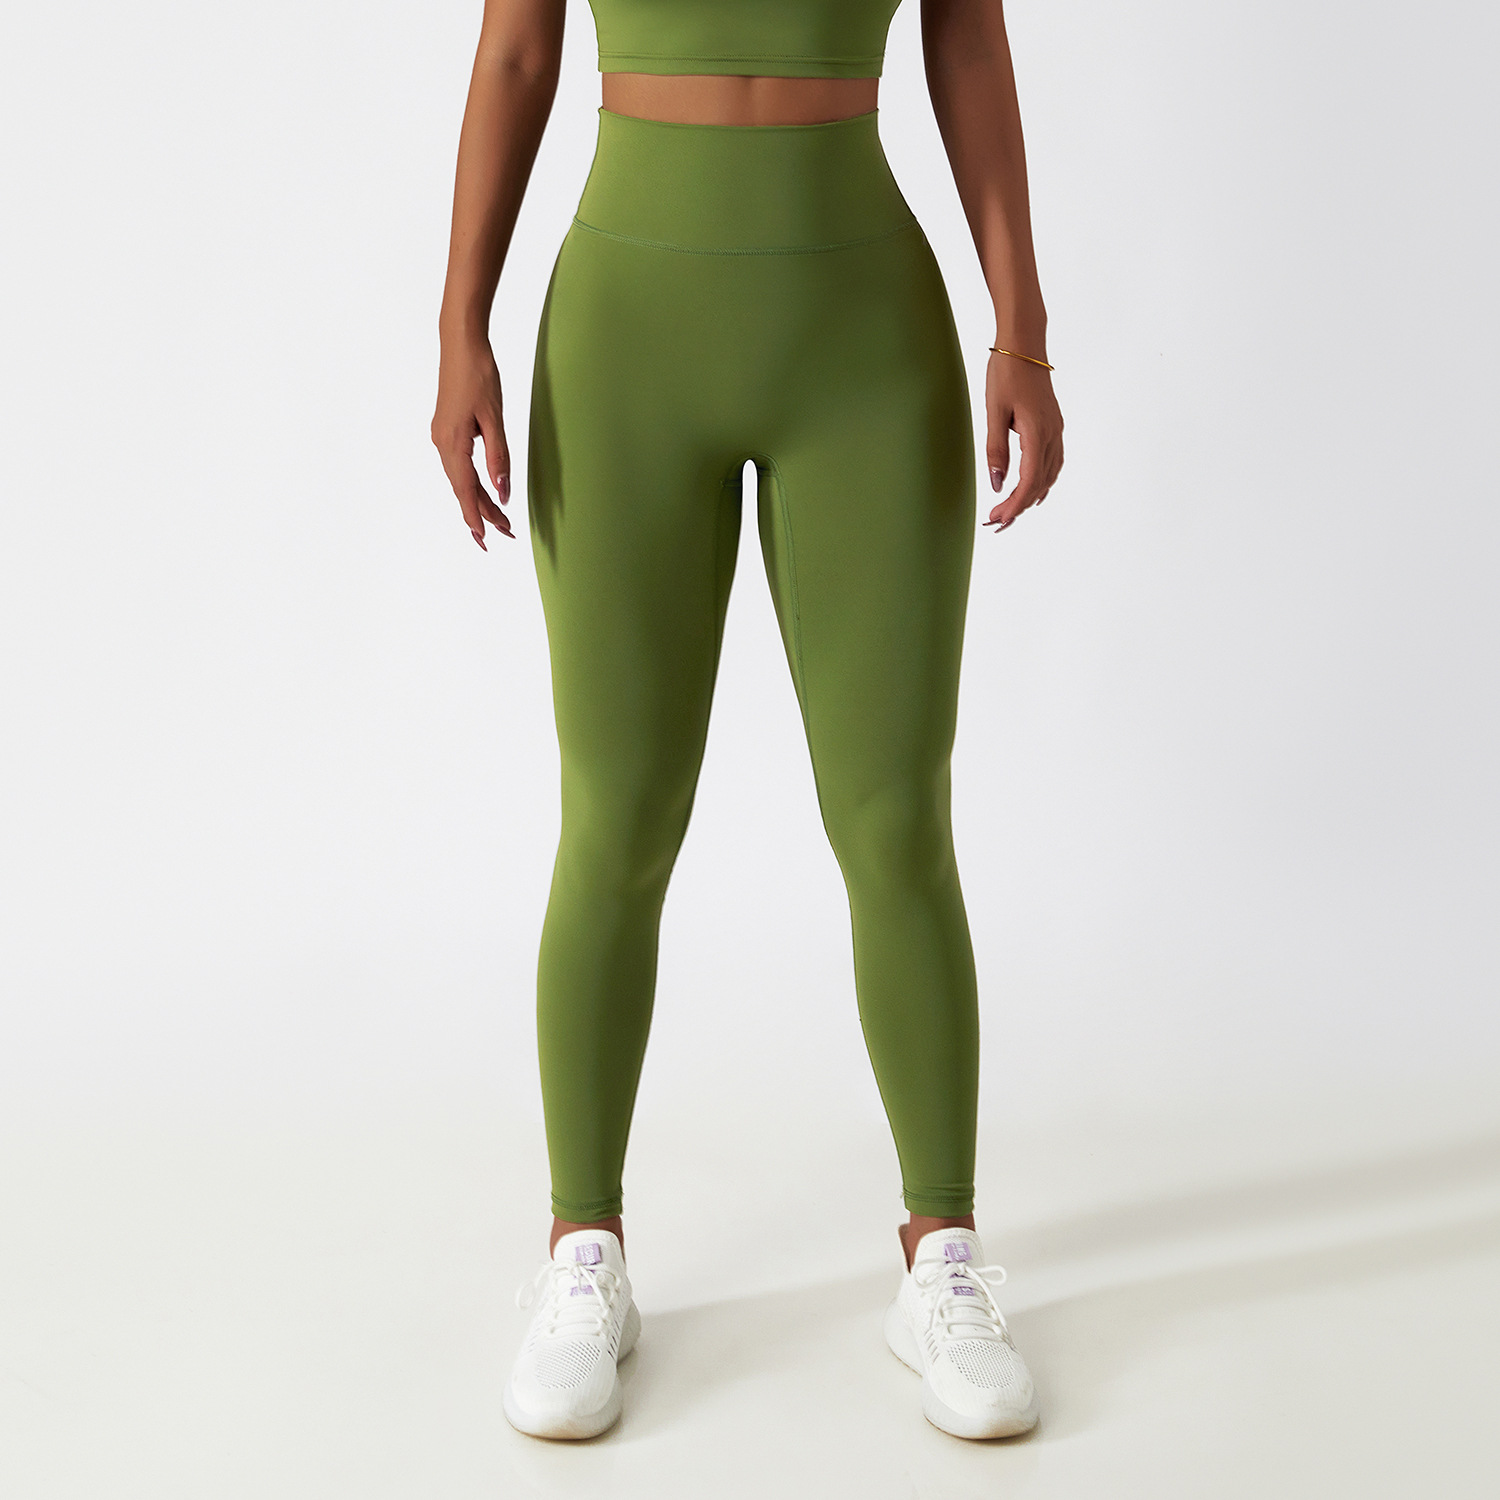 CK5858 recycled nylon legging for gym winter running leggings